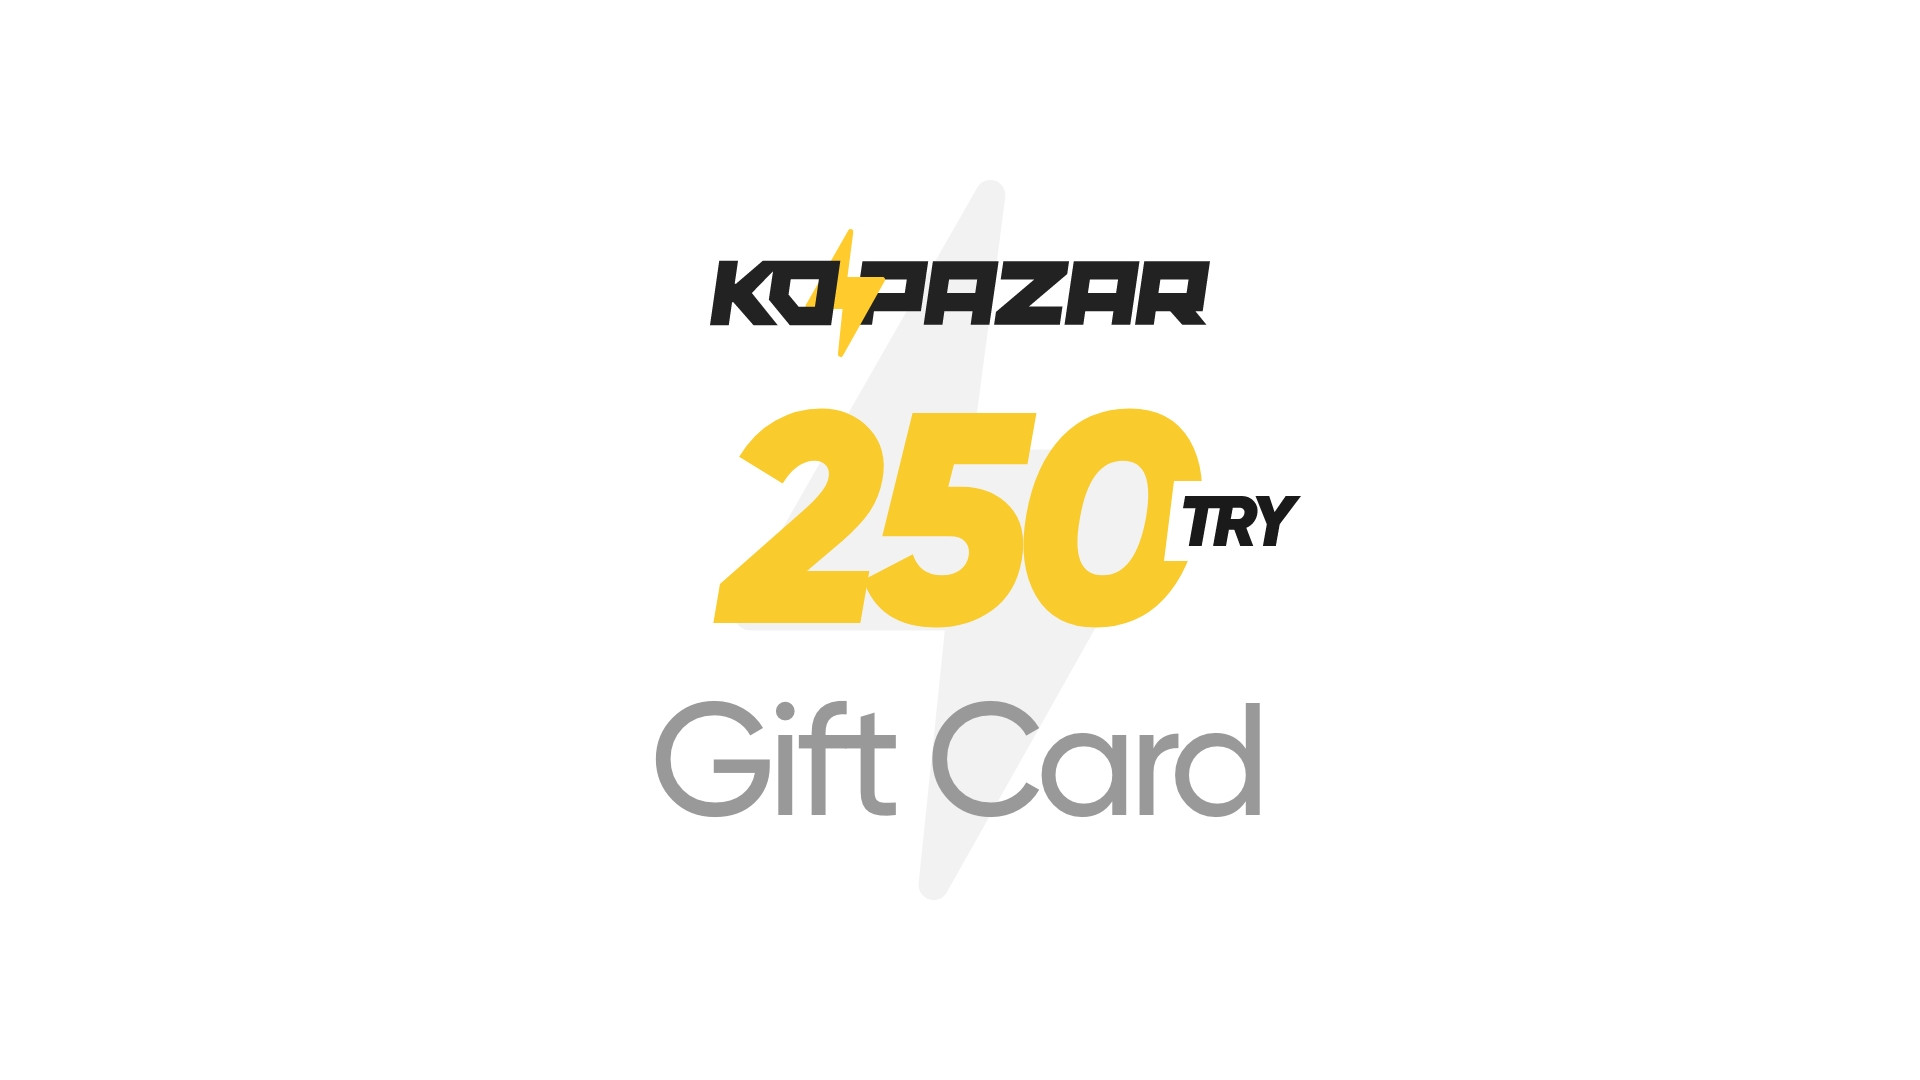 Kopazar 250 TRY Gift Card